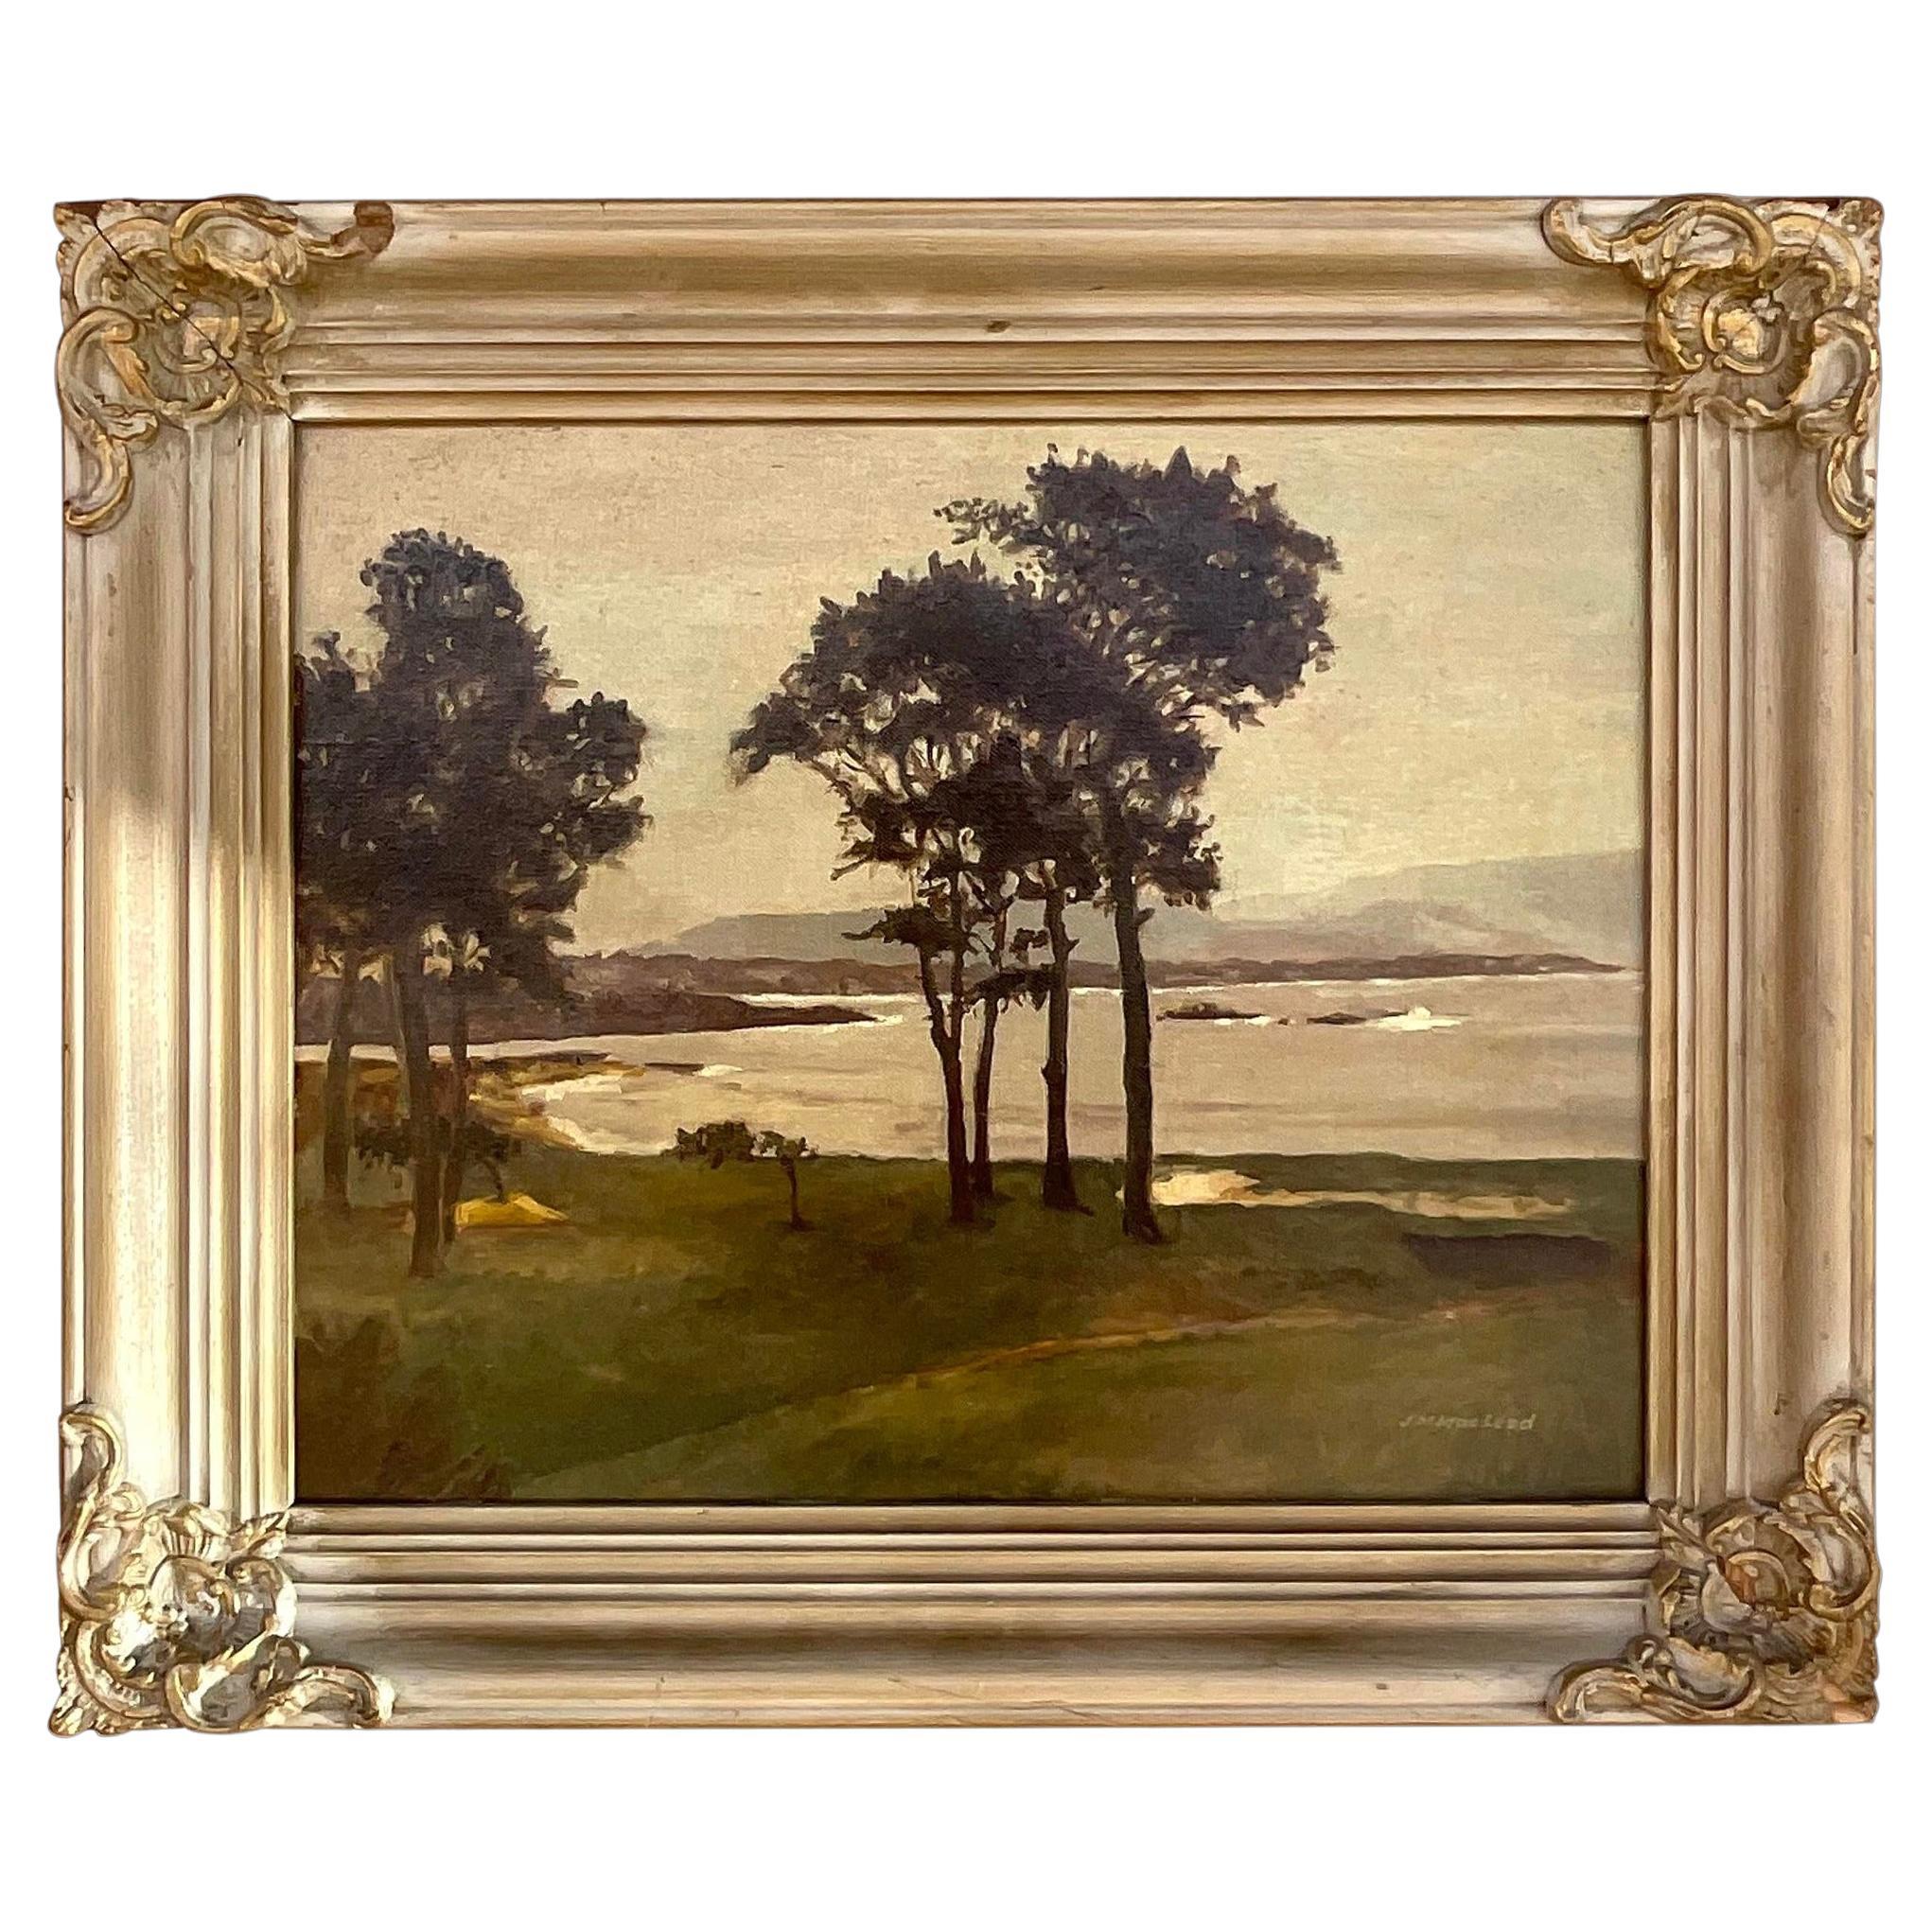 Vintage Boho Original Oil Landscape Painting Signed McLeod